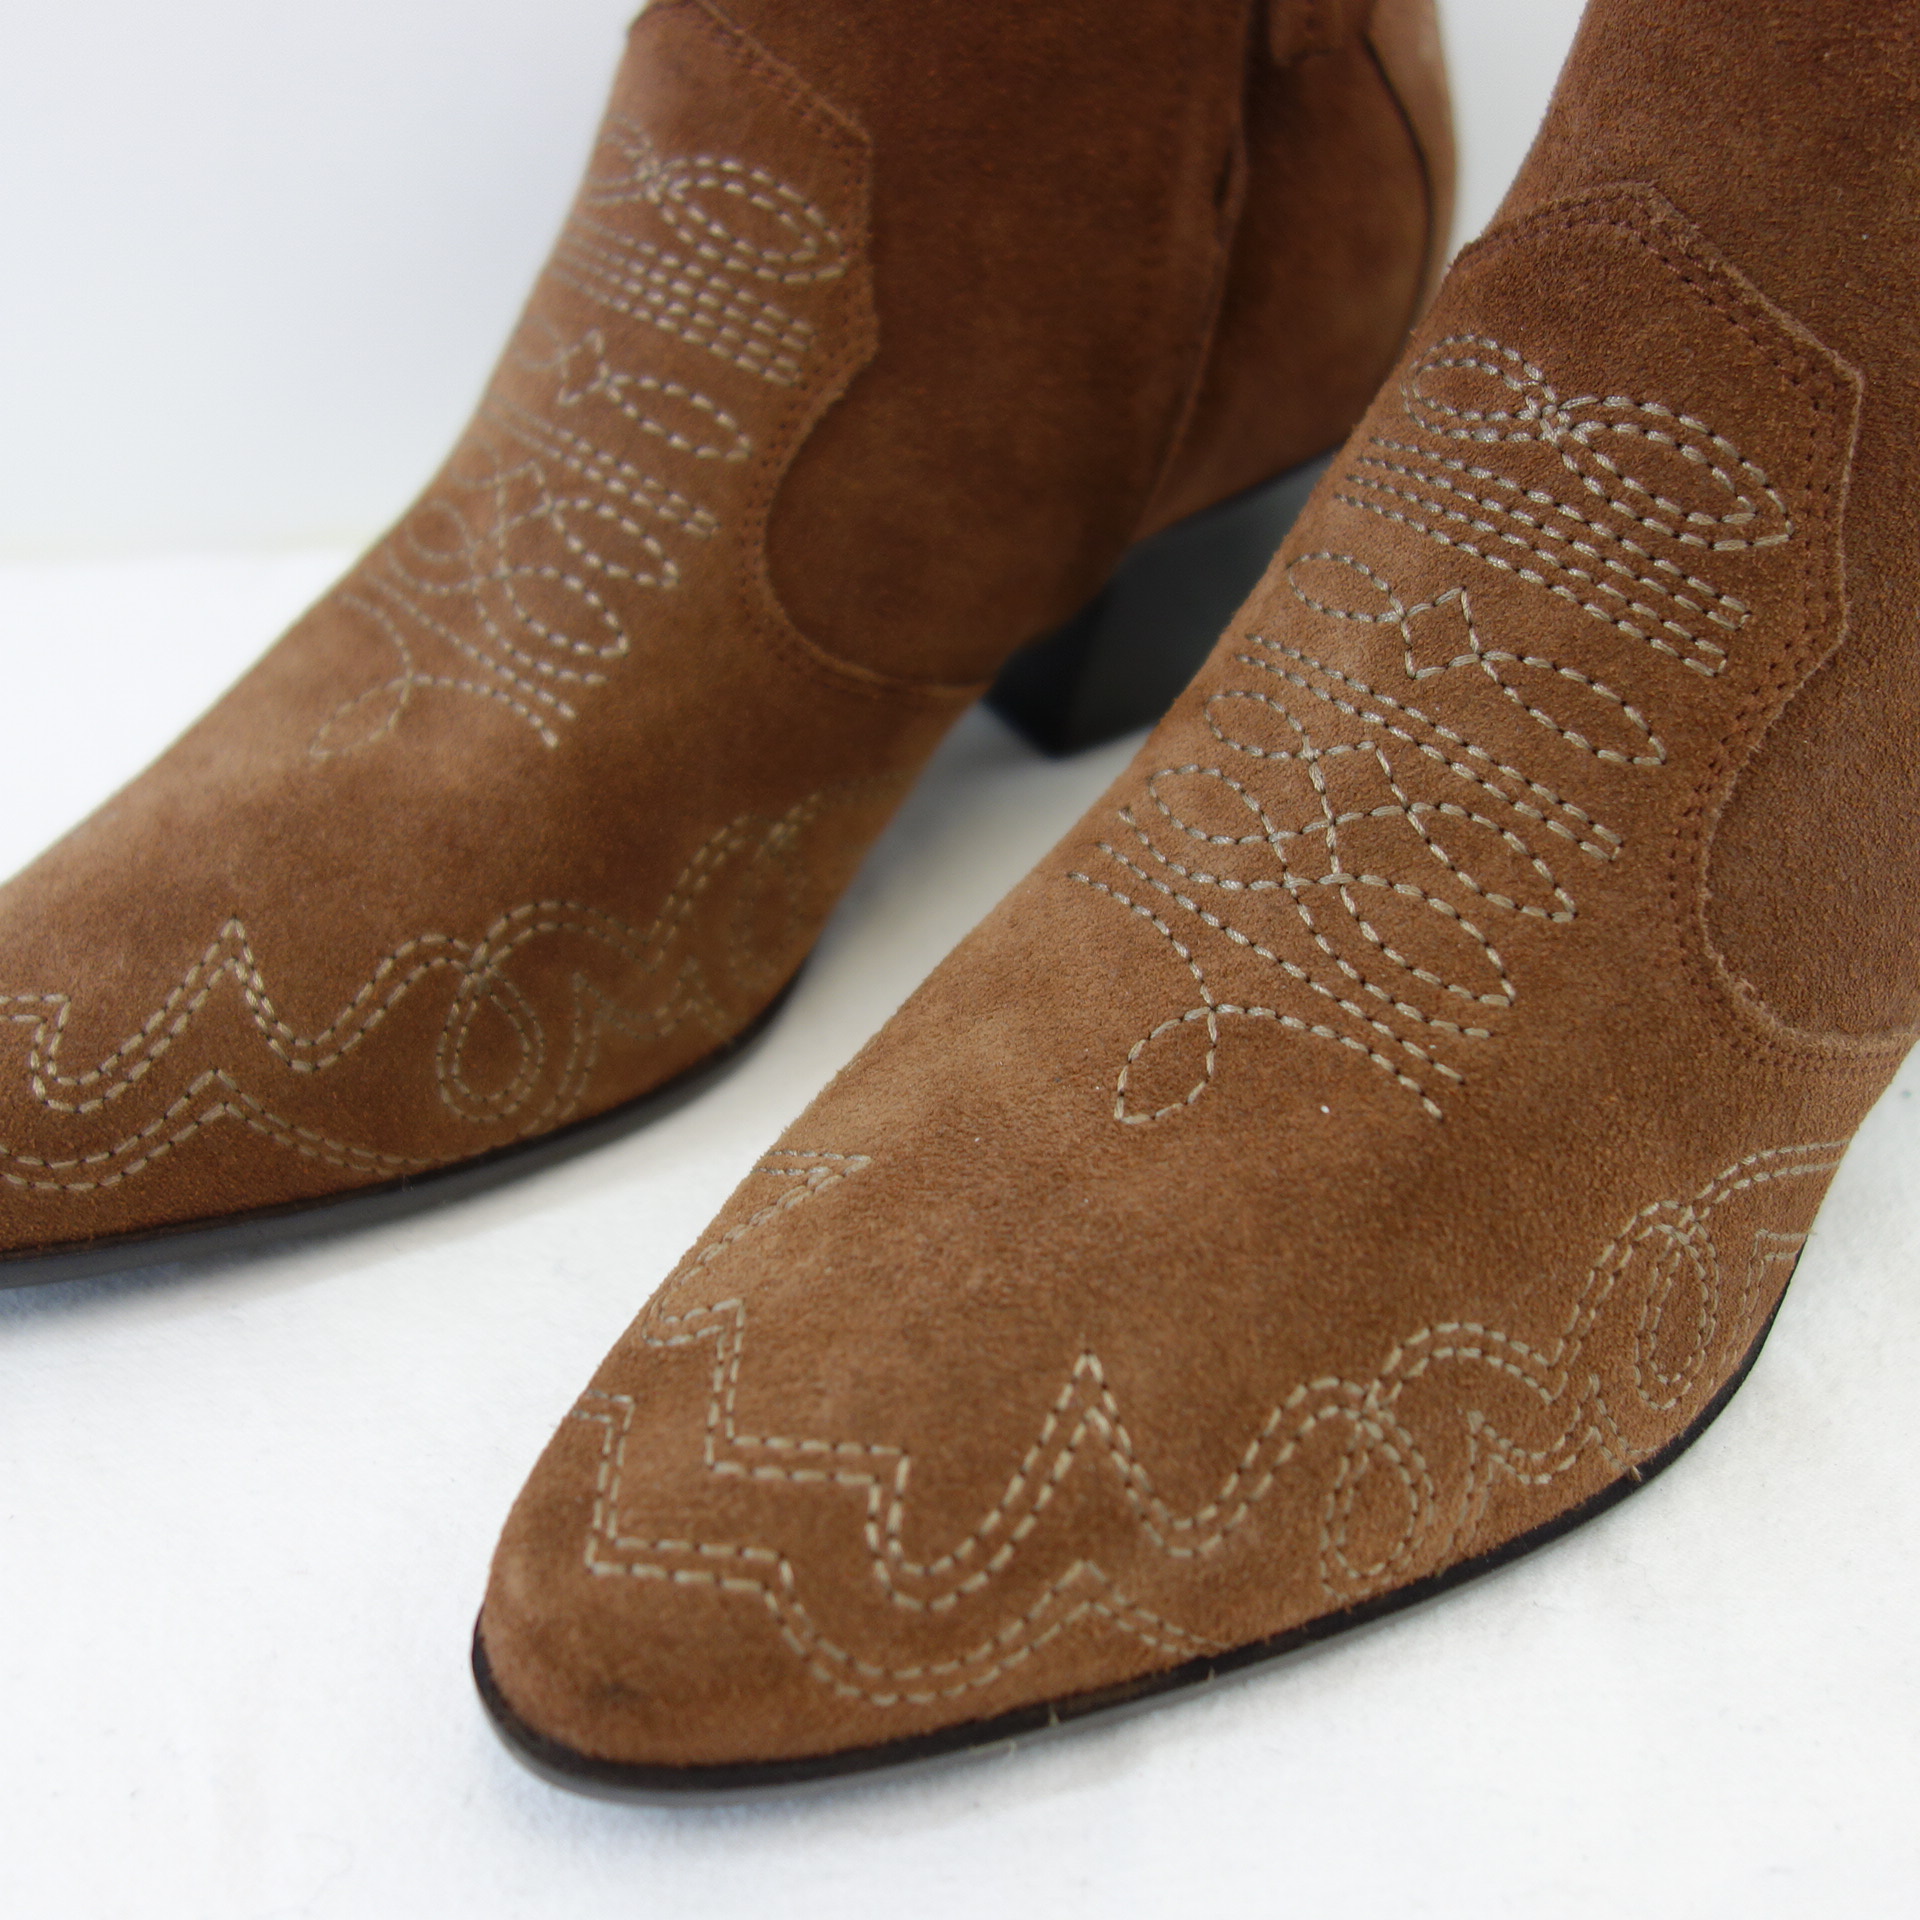 FIRST1FASHION Damen Schuhe Stiefeletten Cowboy Boots Braun Wildleder Np 220 Neu